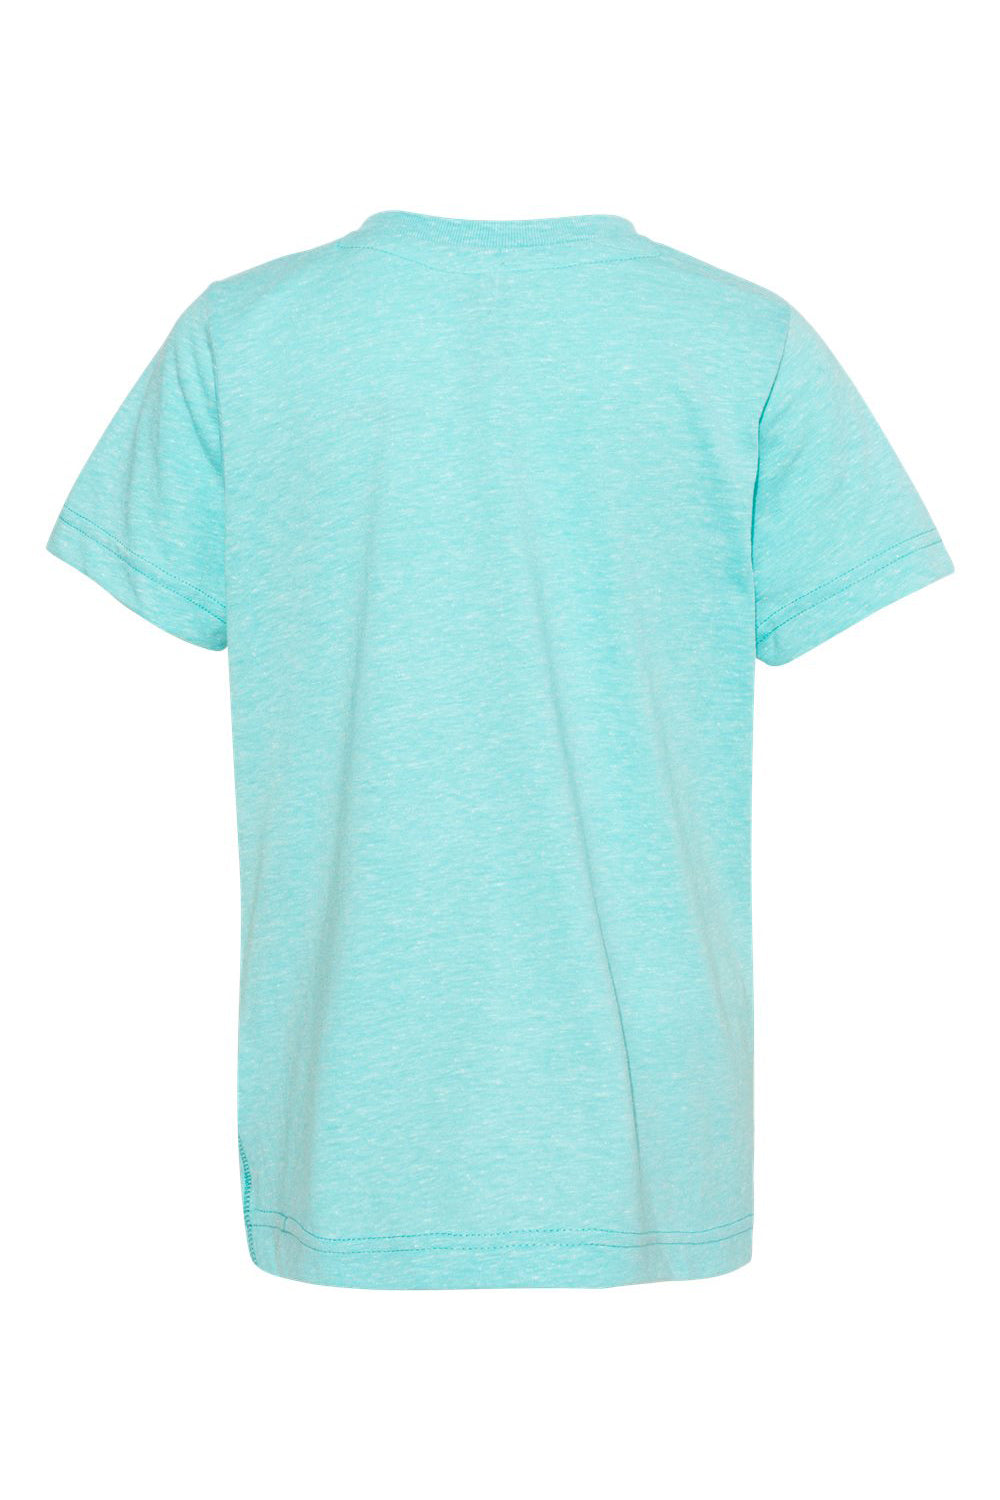 LAT 6191 Youth Harborside Melange Short Sleeve Crewneck T-Shirt Caribbean Blue Flat Back